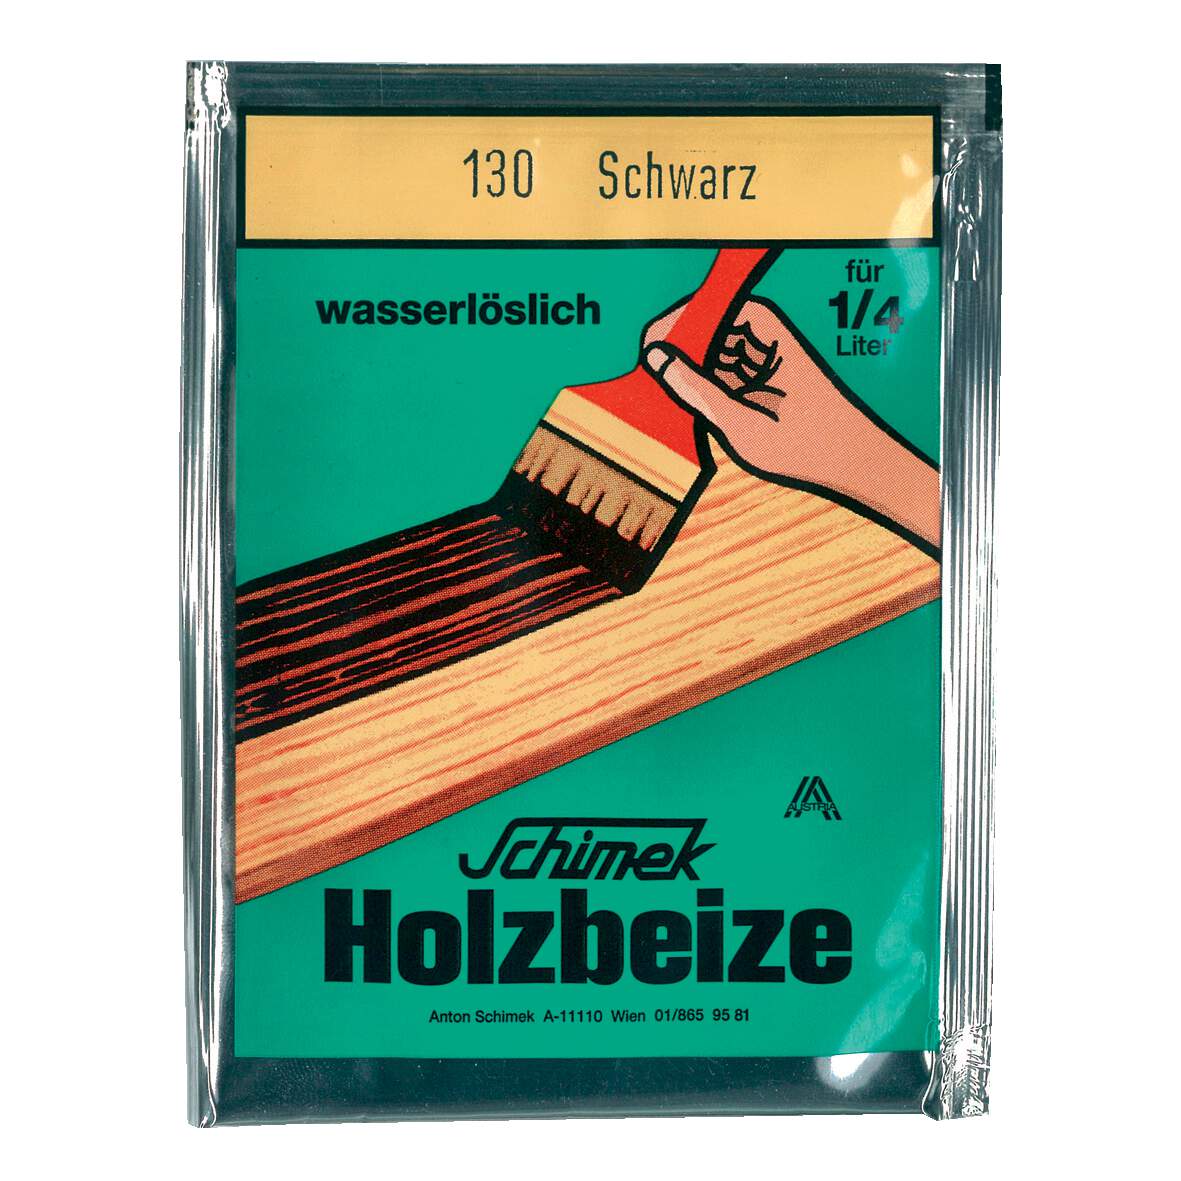 1216621 - Holzbeize wasserlöslich